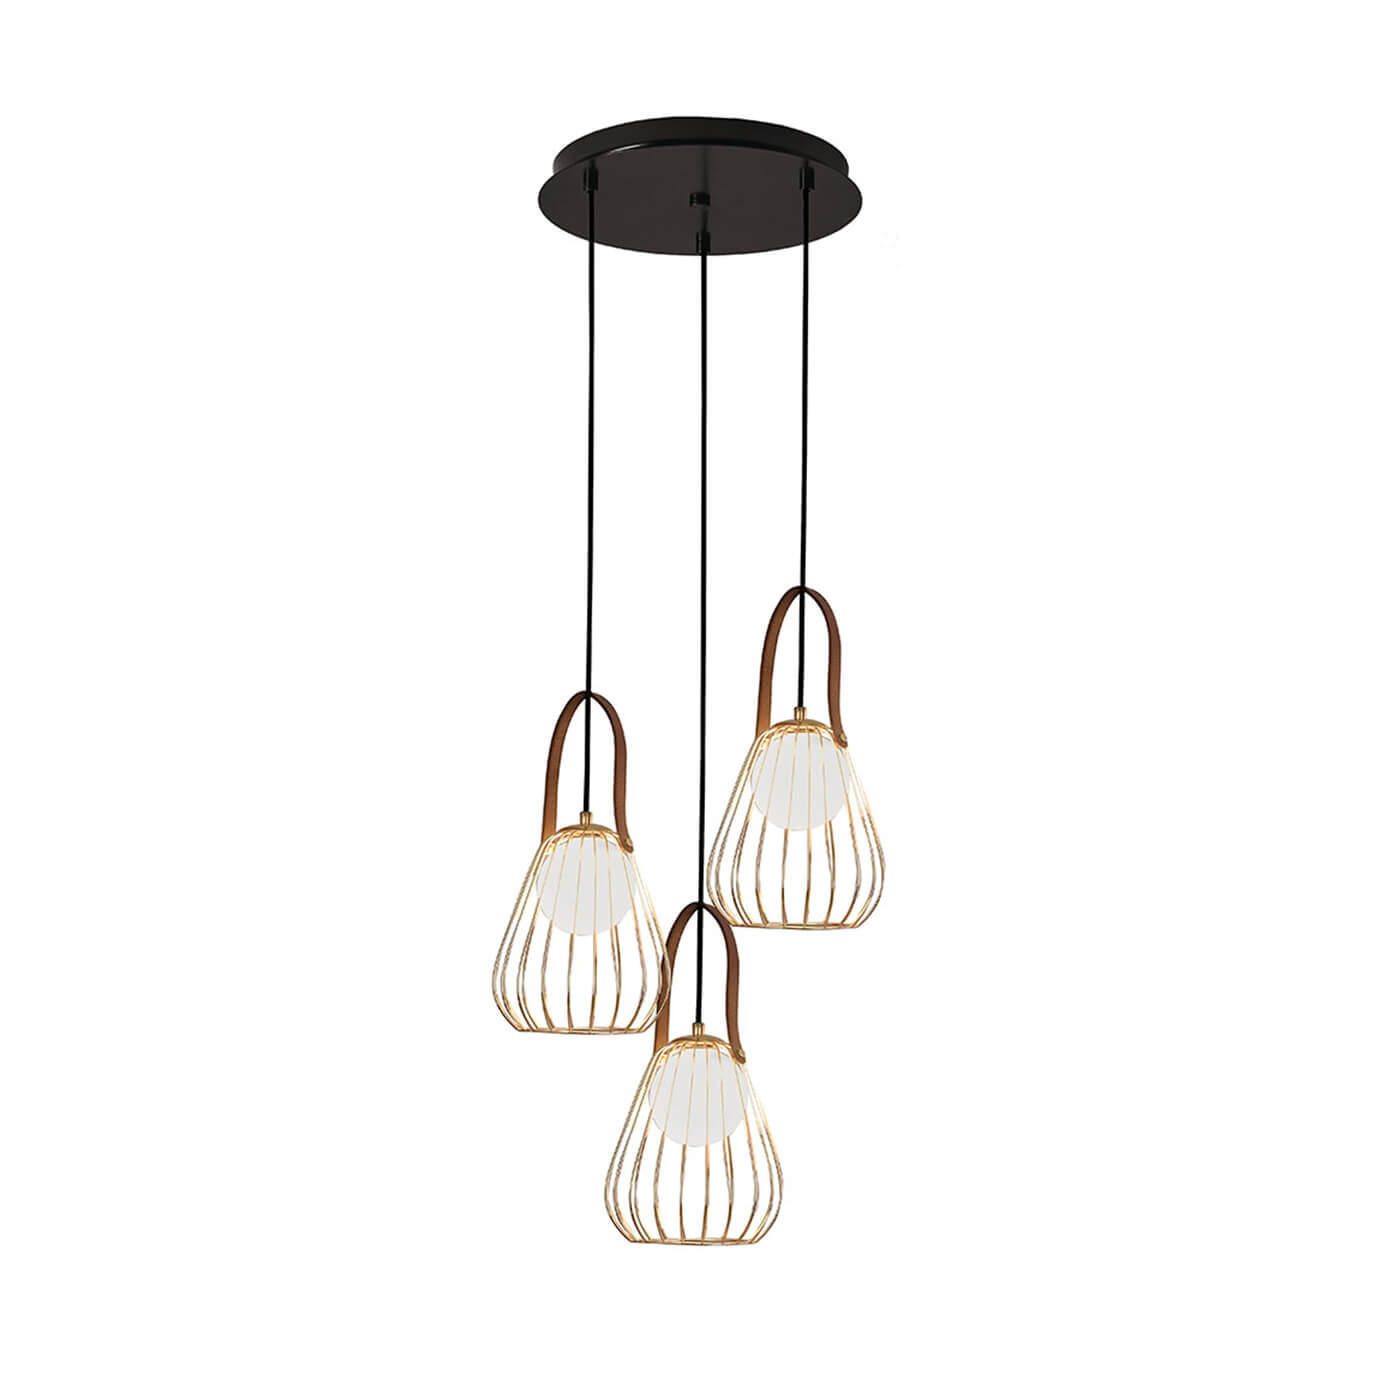 Cauti o lampa suspendata aurie LEVIK S3 din metal cu globuri de sticla, design modern, elegant, pentru living, dining sau dormitor din colectia de lustre si candelabre Domicilio?